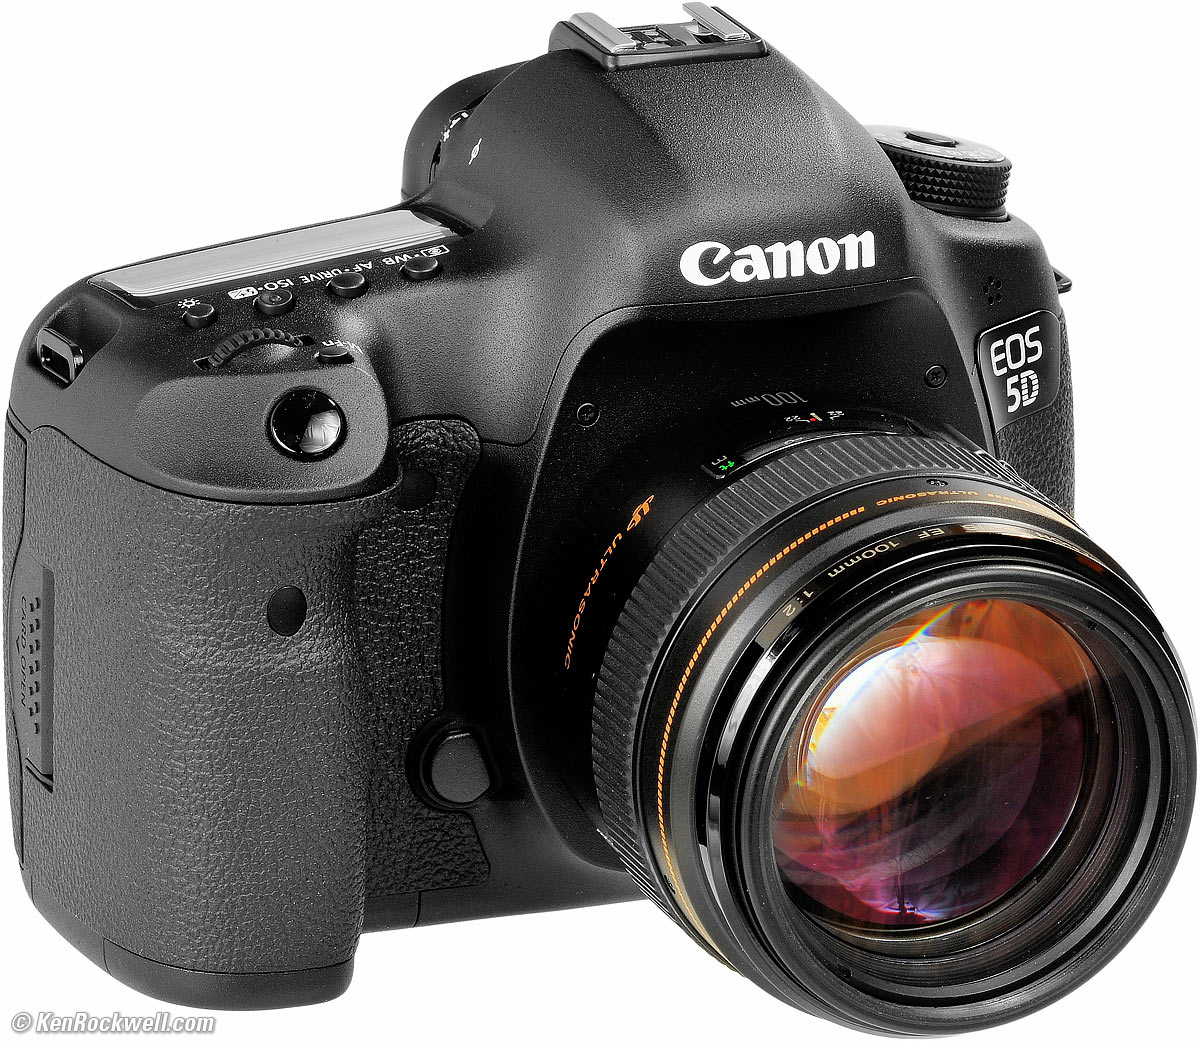 roddel Potentieel Haalbaarheid Canon 5D Mark III Review